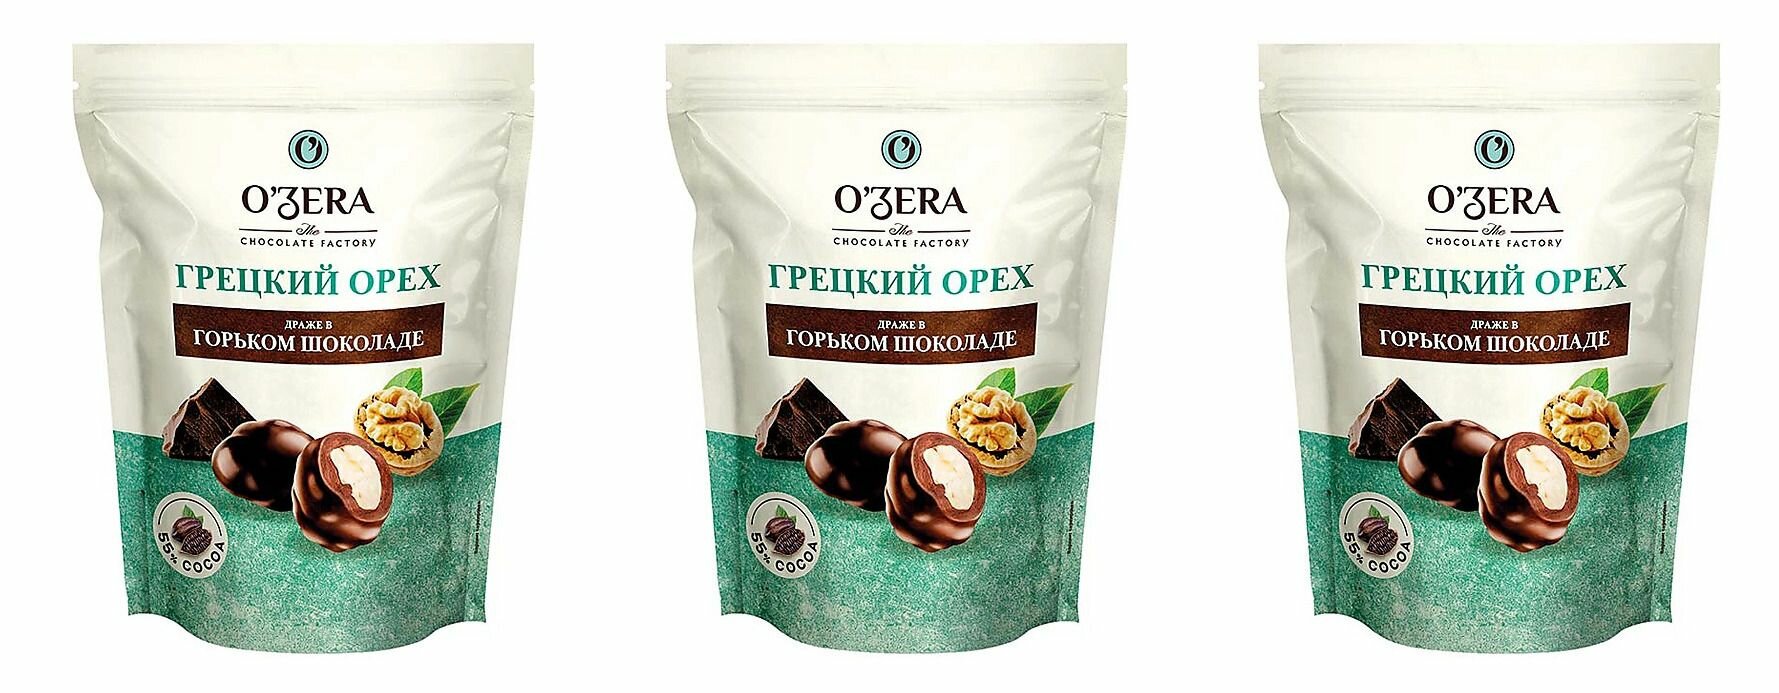 OZera, драже Грецкий орех в горьком шоколаде,3шт по 150 г